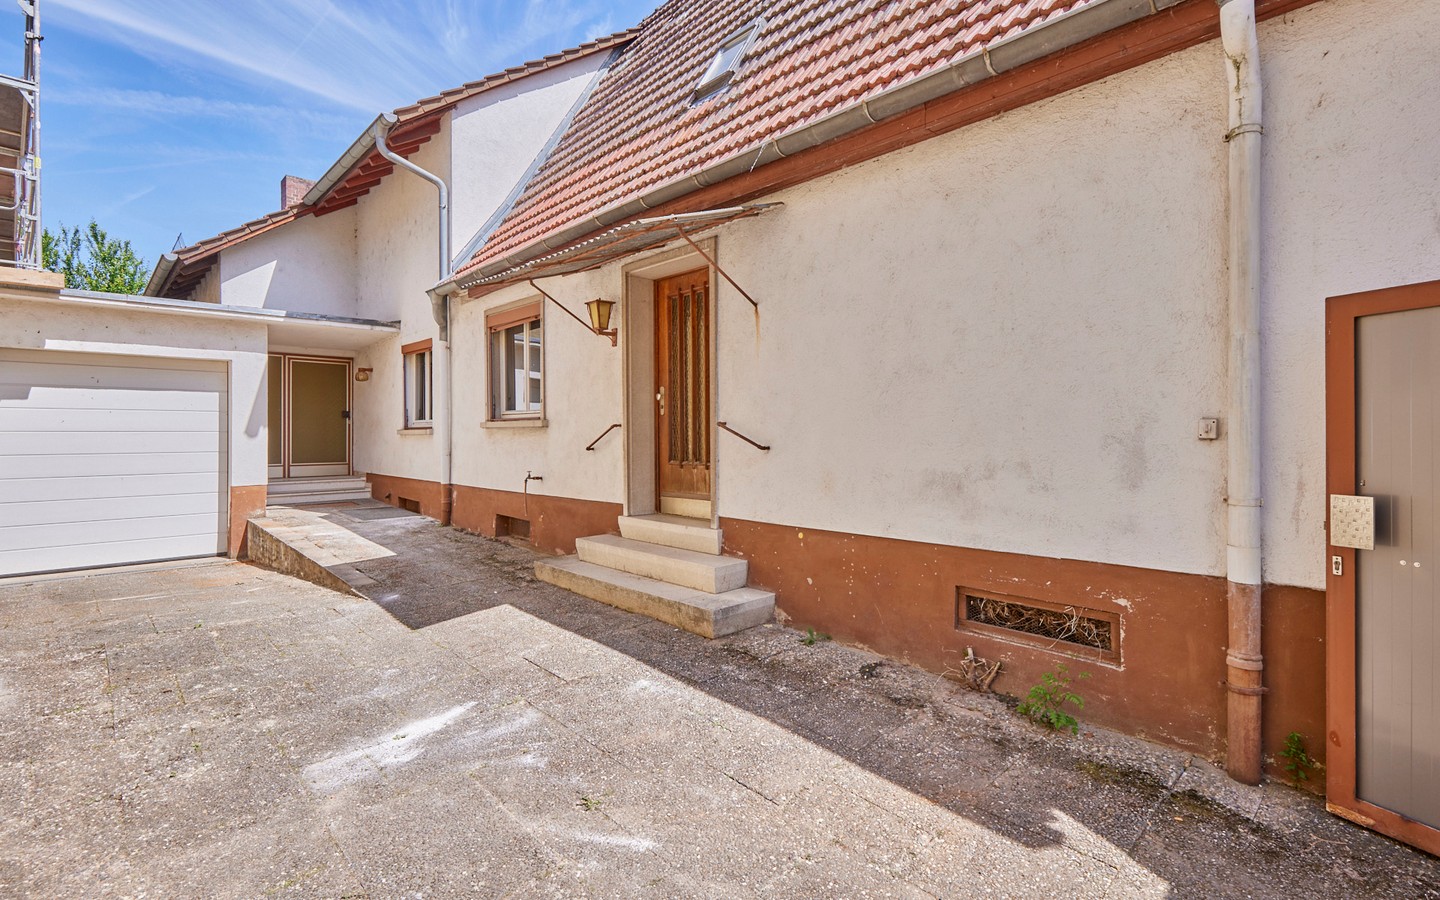 Hof innen - Sanierungsbedürftiges Einfamilienhaus am Neckar mit Garten und Ausbaupotenzial für zwei Familien